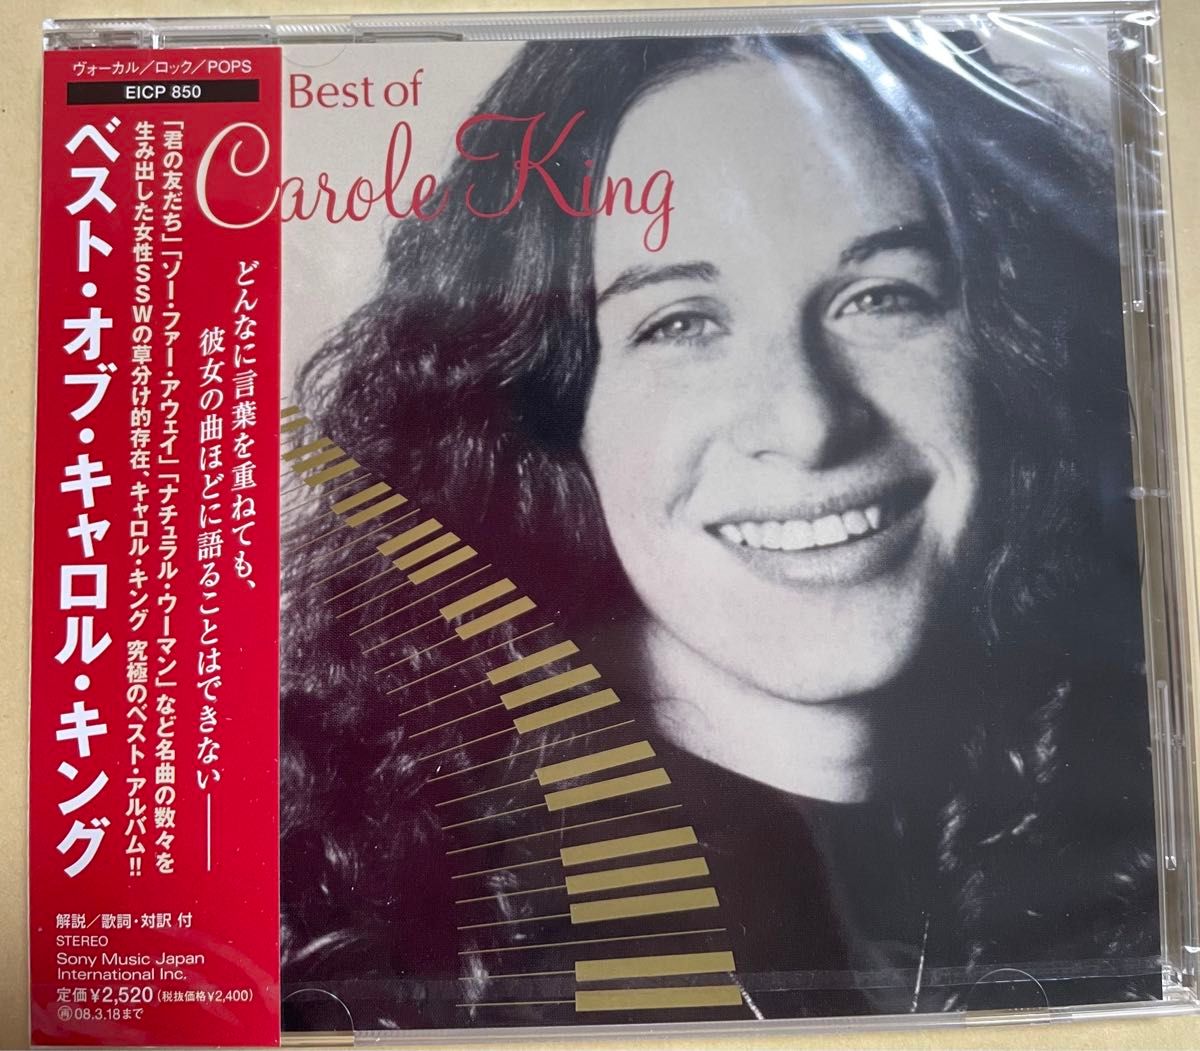 【新品未開封CD】Carole King ベスト・オブ・キャロル・キング